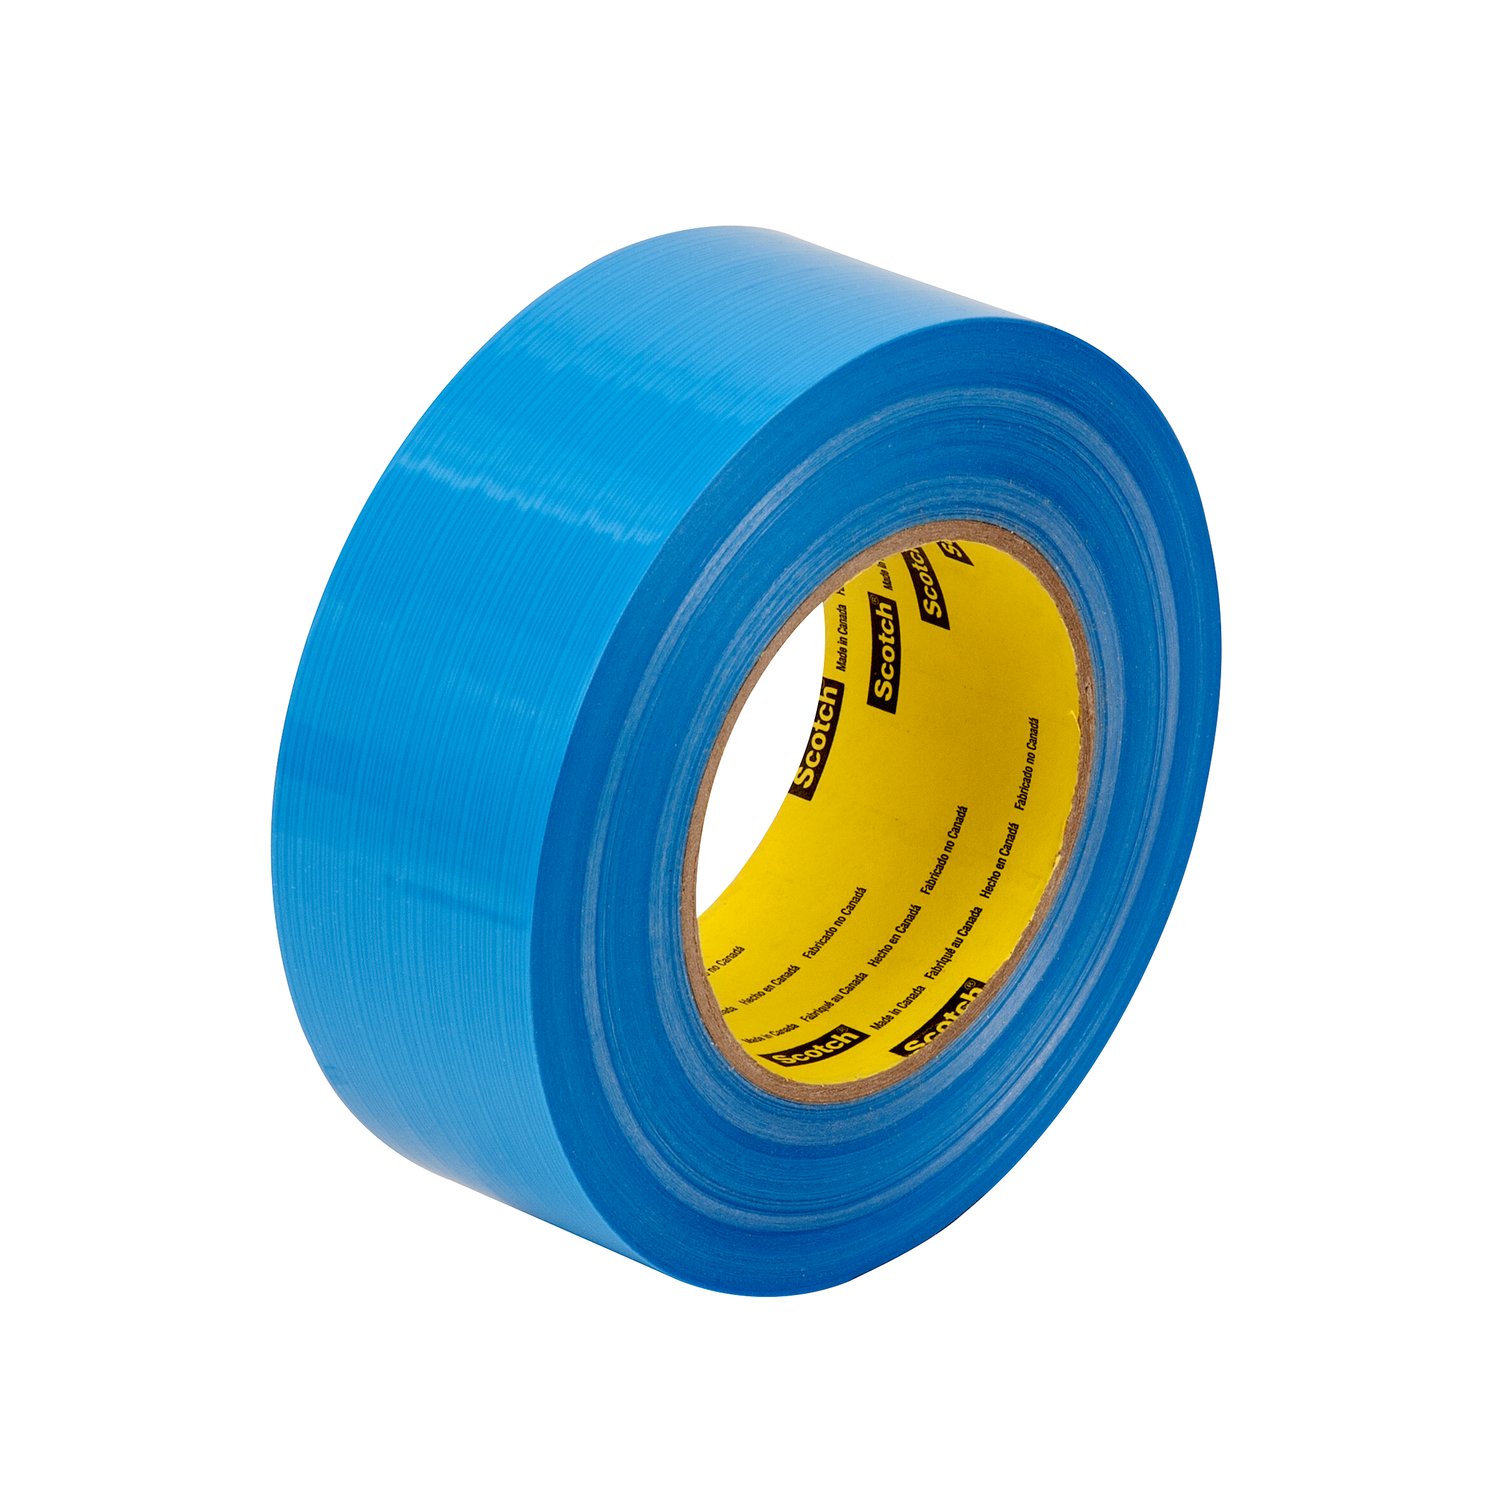 7000123852 - Scotch Filament Tape 8916V, Blue, 36 mm x 55 m, 6.8 mil, 6.8 mil, 24
rolls per case